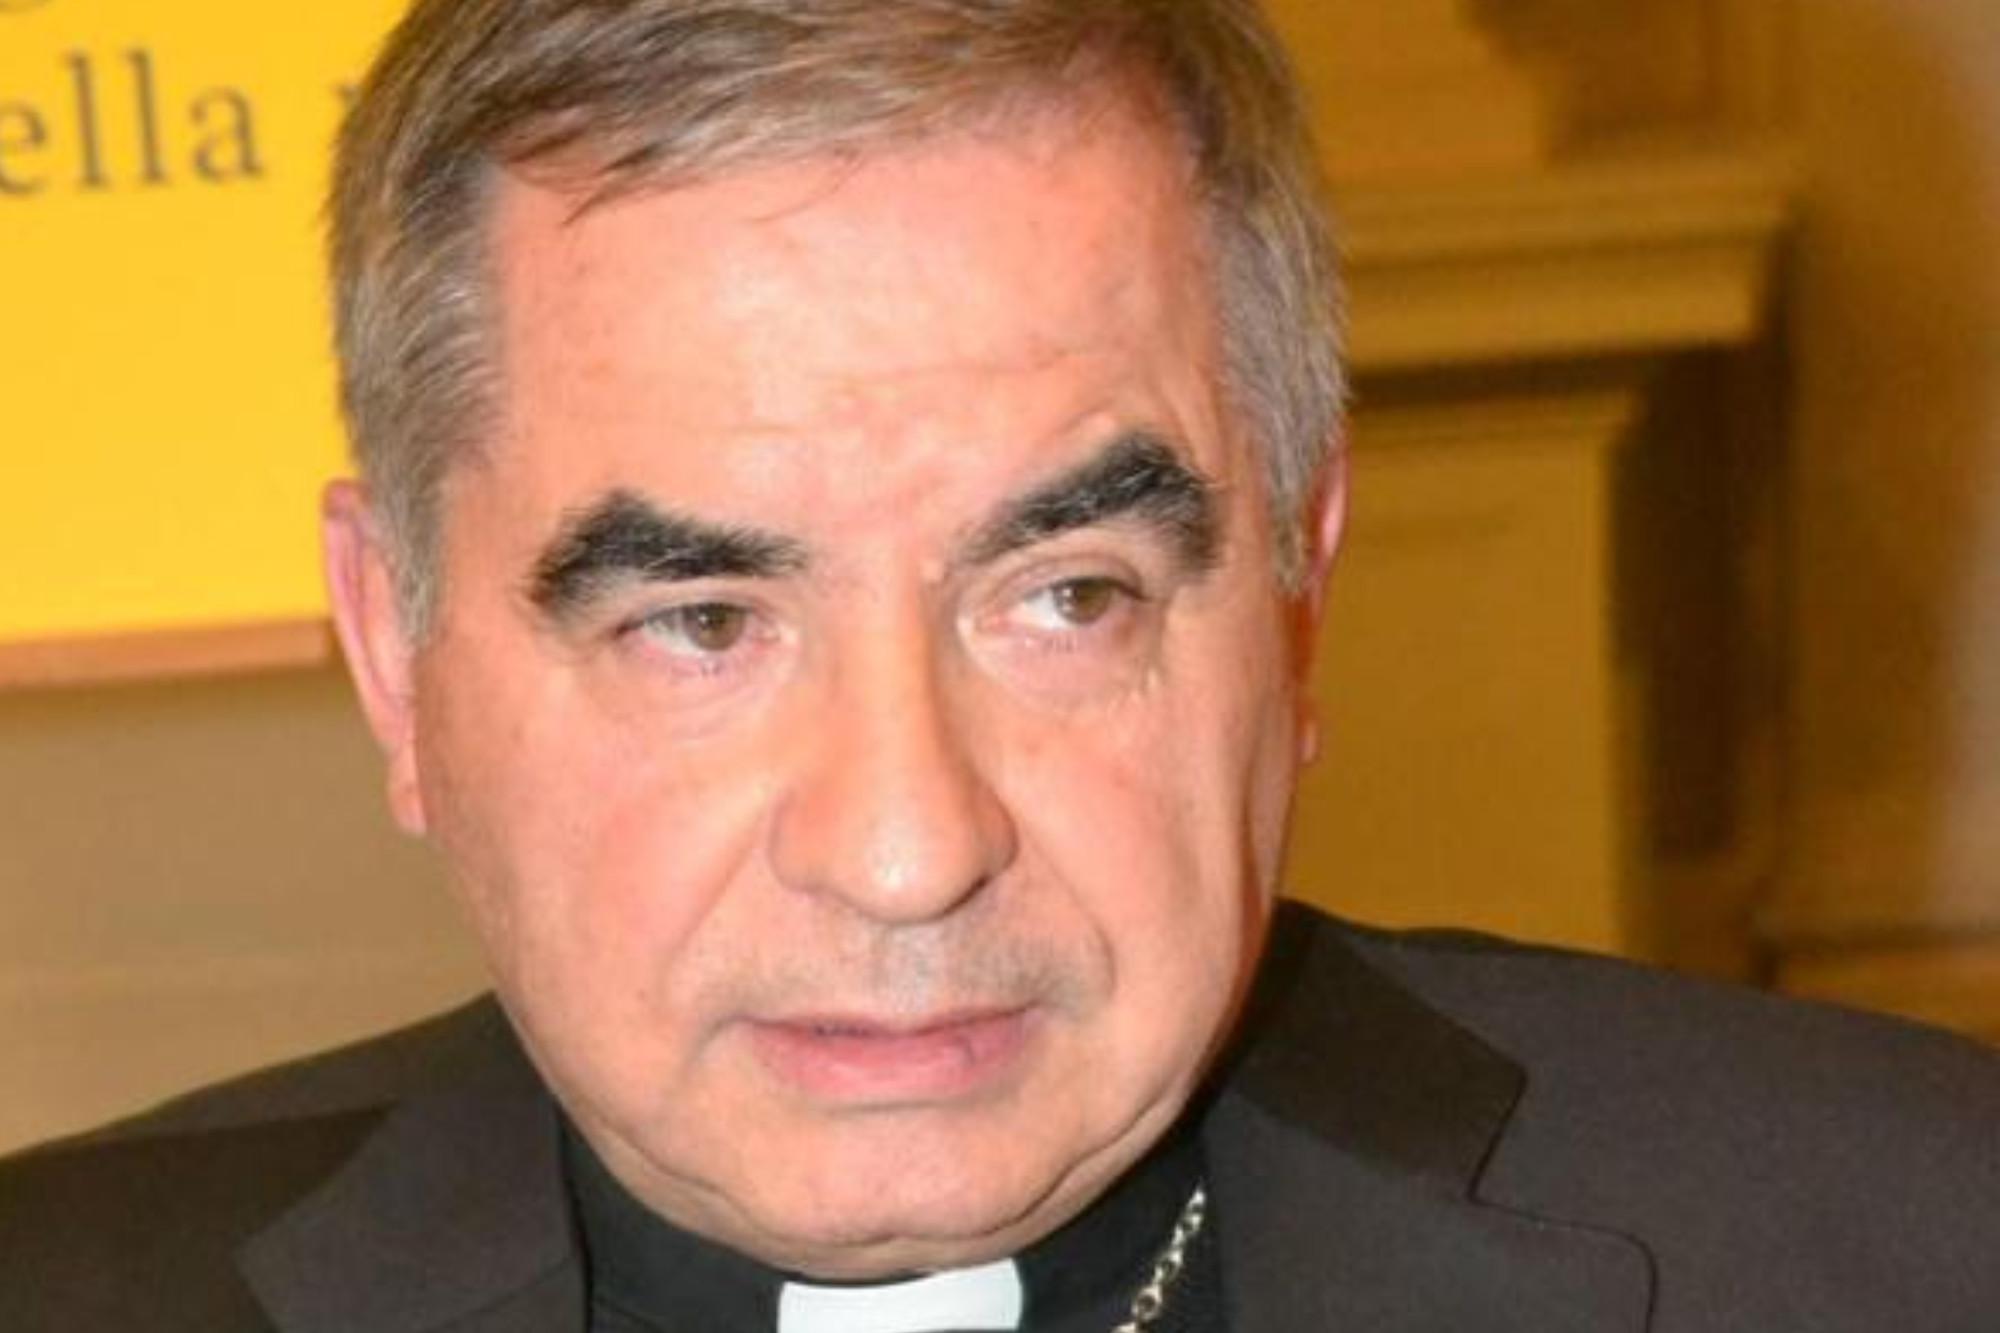 Vaticano, legali famiglia Becciu: "Chat sfogo privato, irrilevanti penalmente"